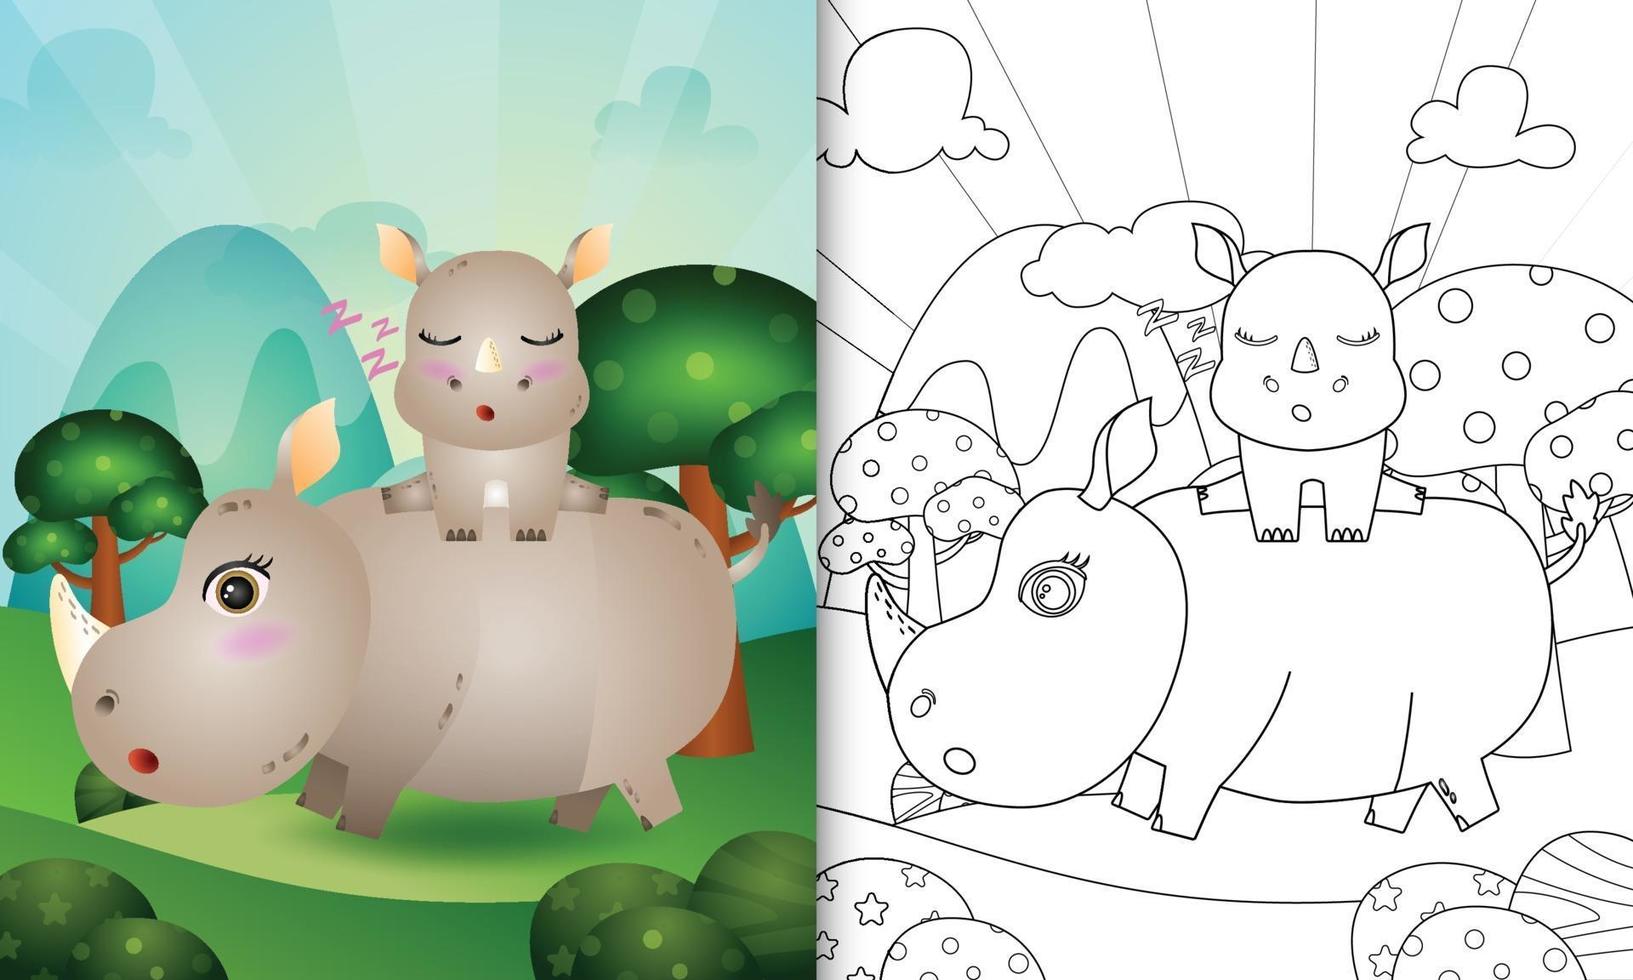 livro de colorir para crianças com uma ilustração de um rinoceronte fofo vetor